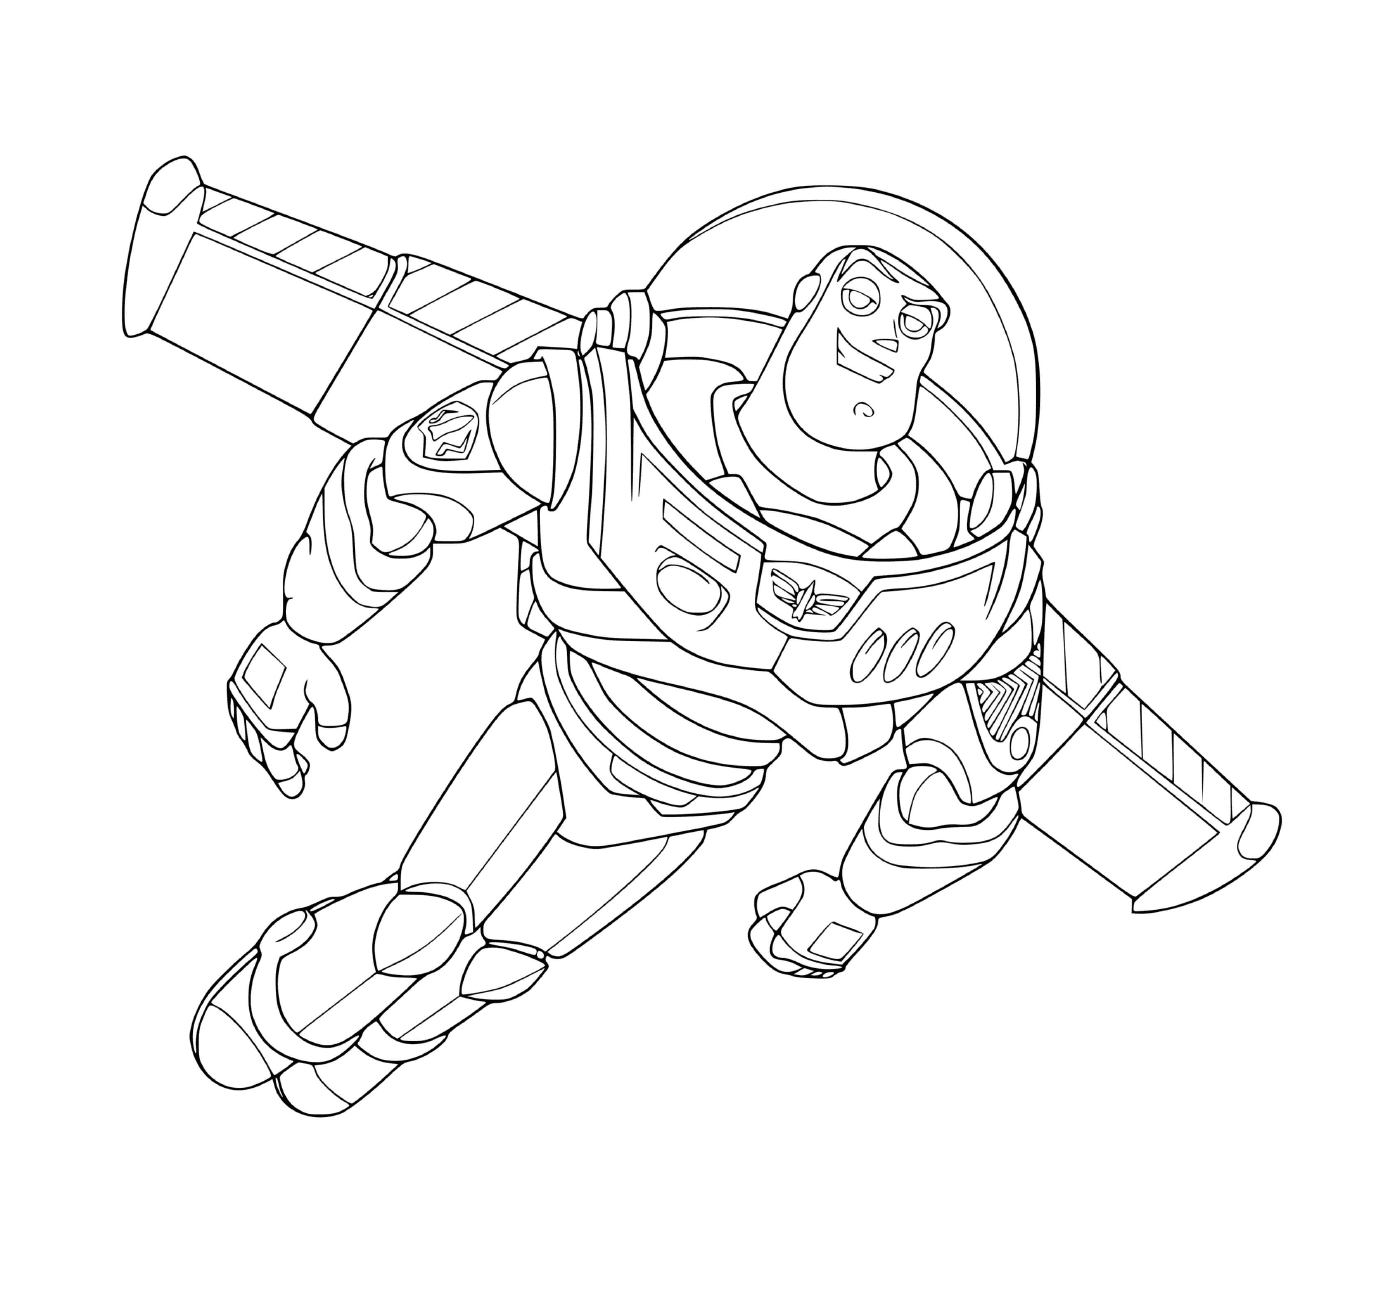  Buzz Lightyear, inspired by Astronaut Buzz Aldrin 